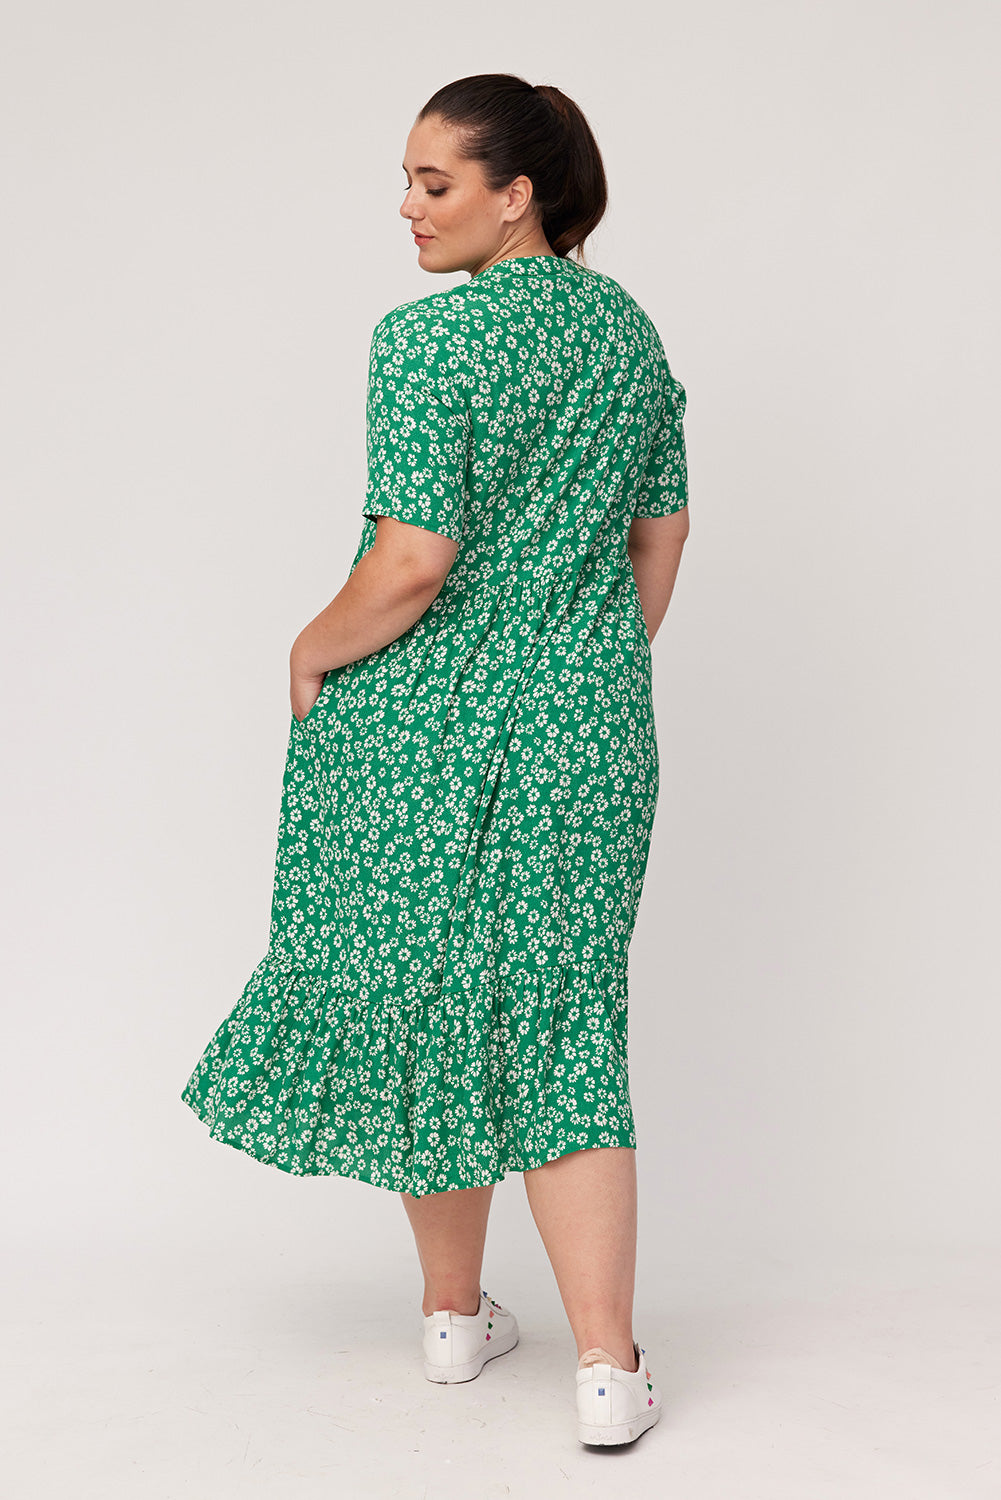 Lemon Tree Maisy Dress - Green Daisy